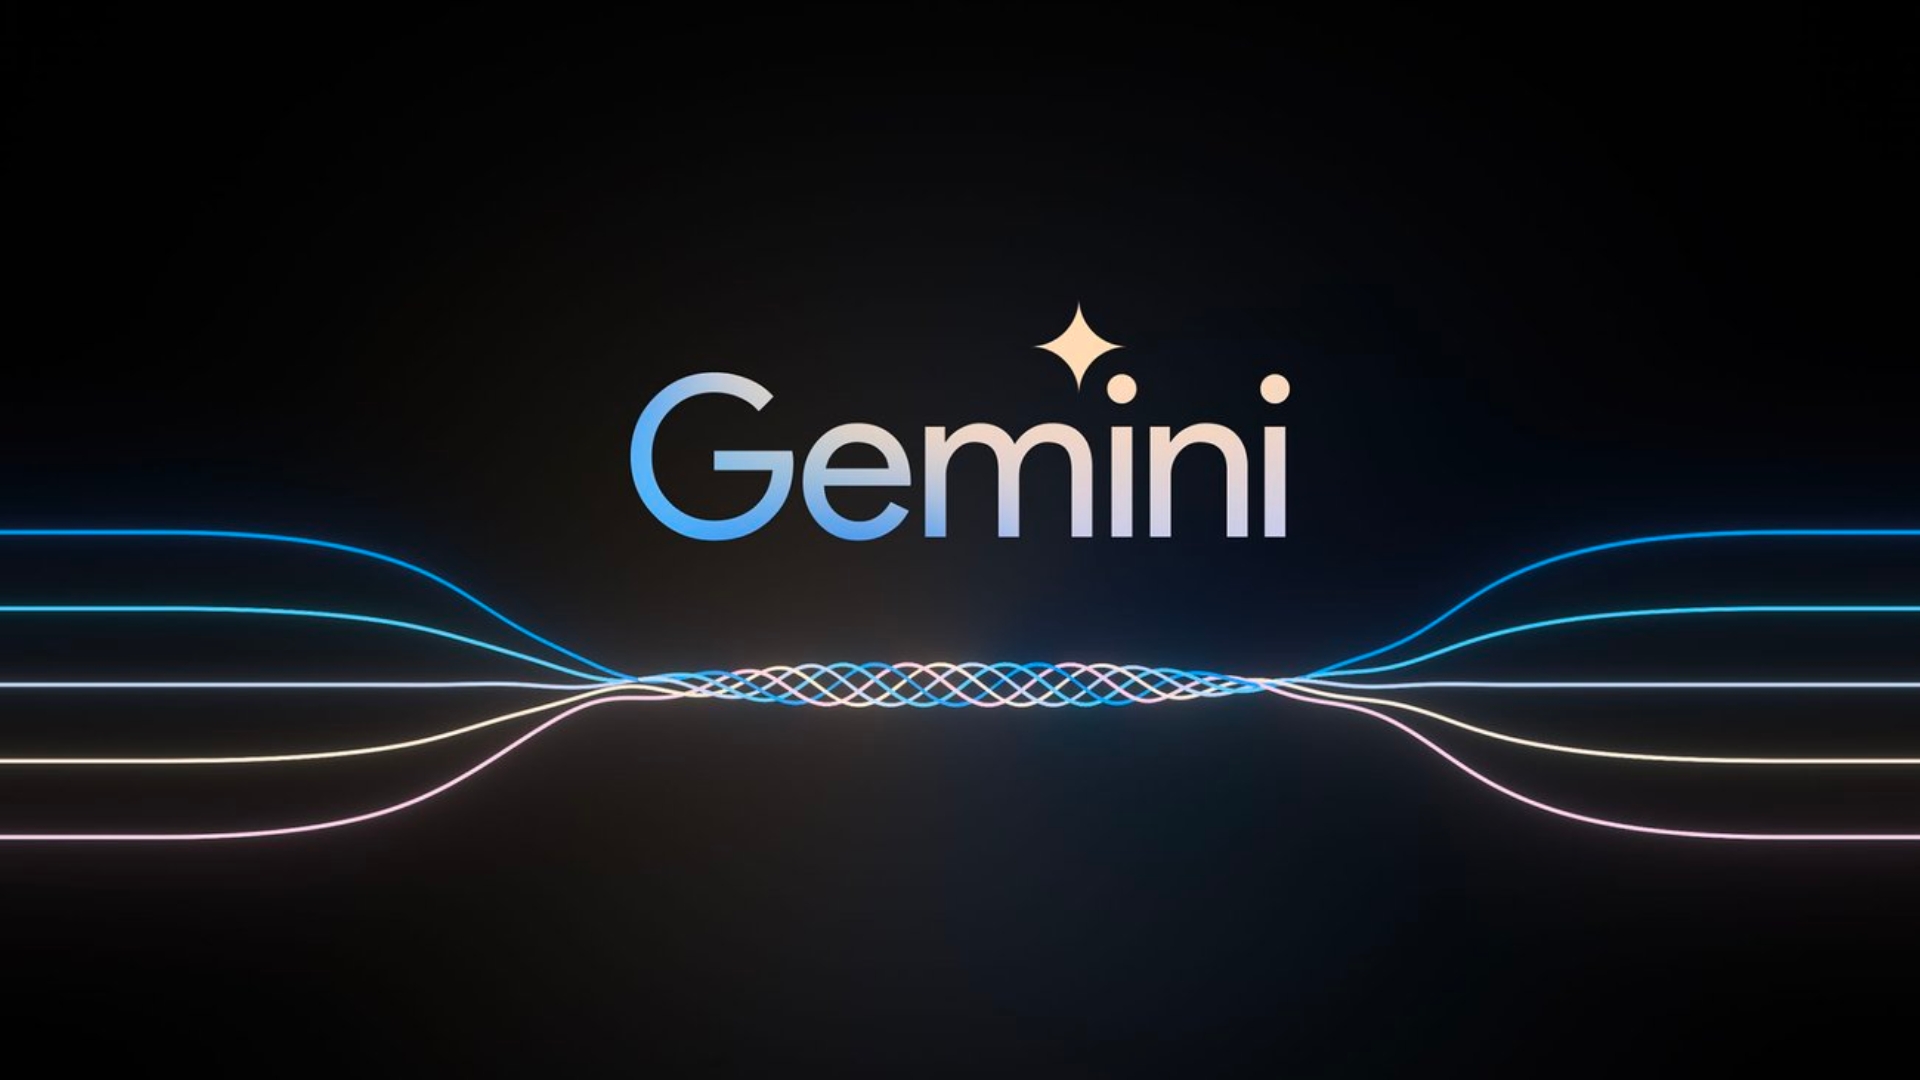 google gemini launch in malaysia